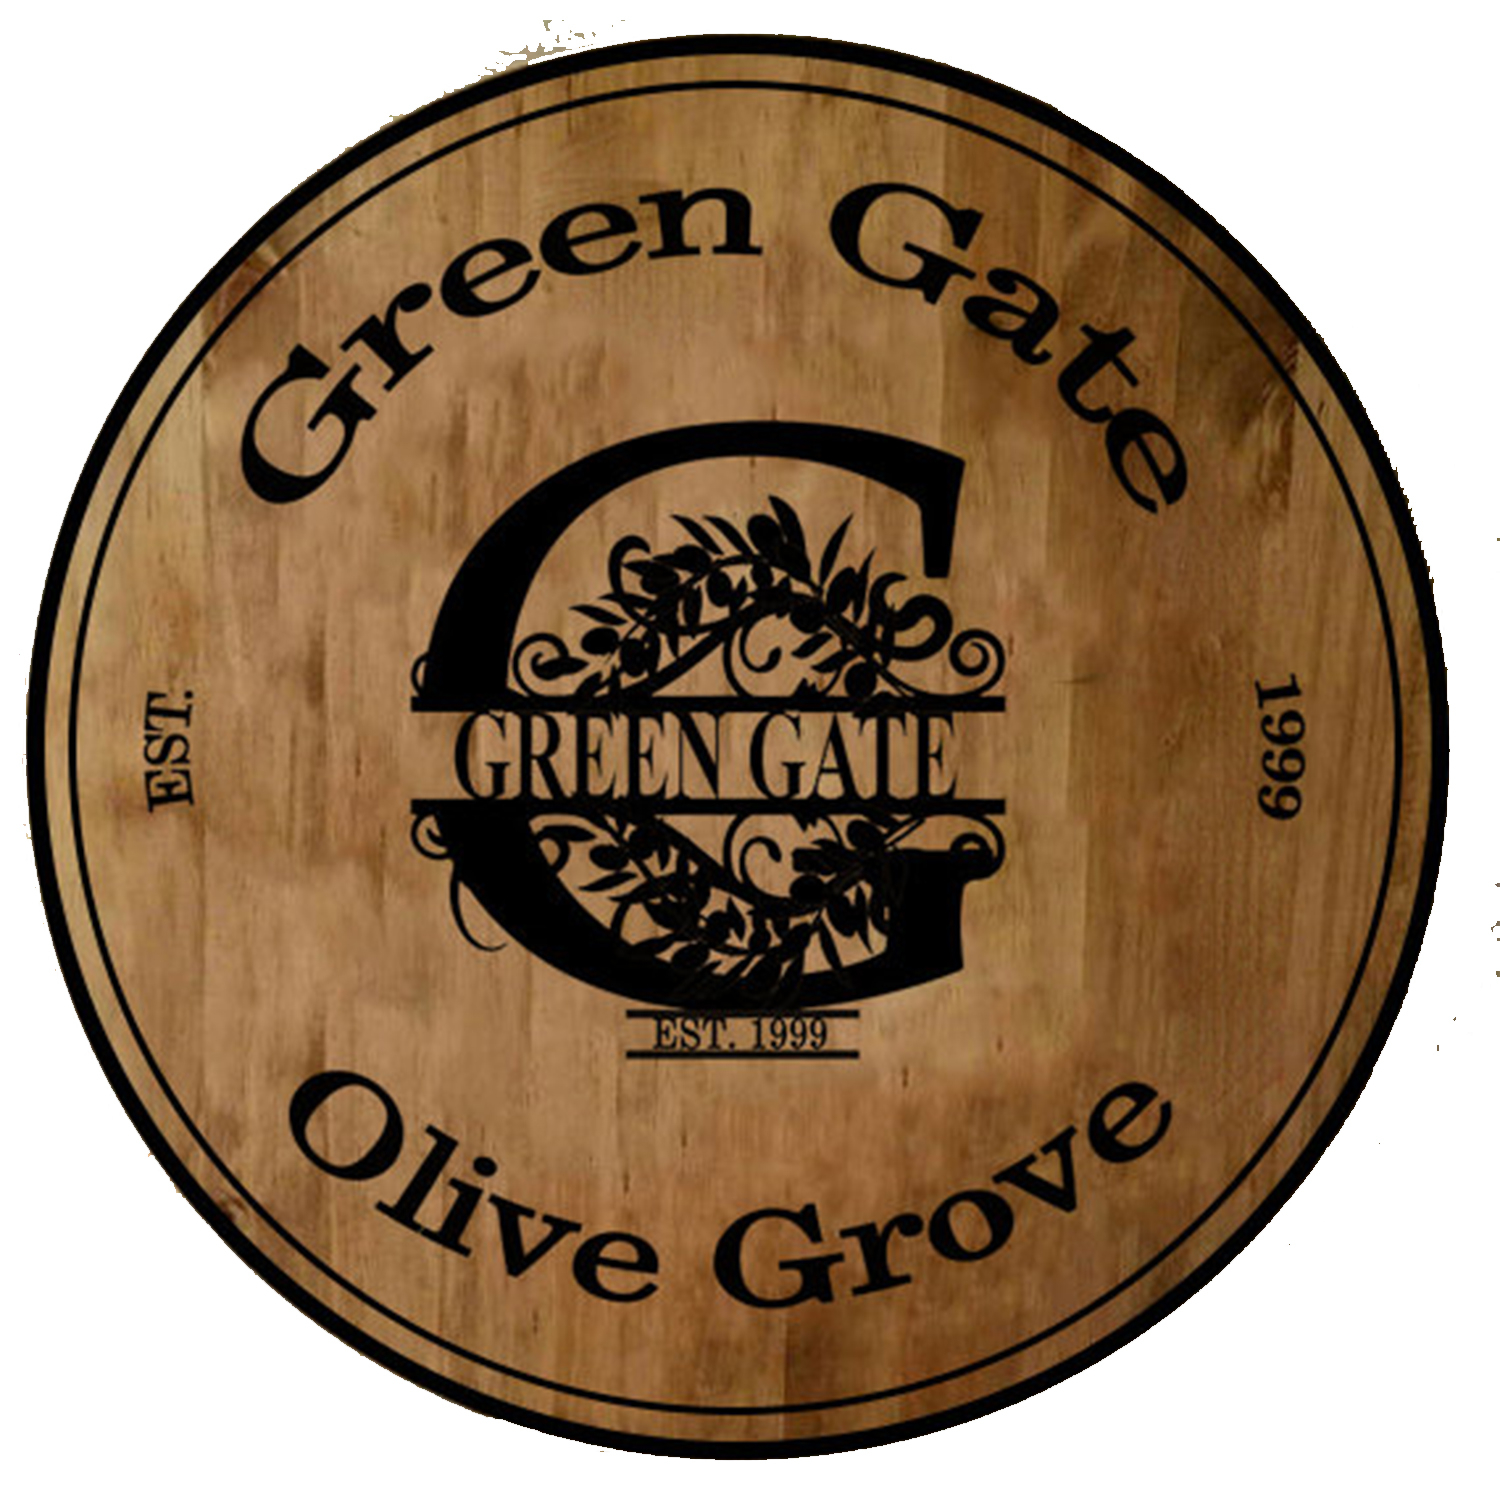 Green Gate Olive Grove